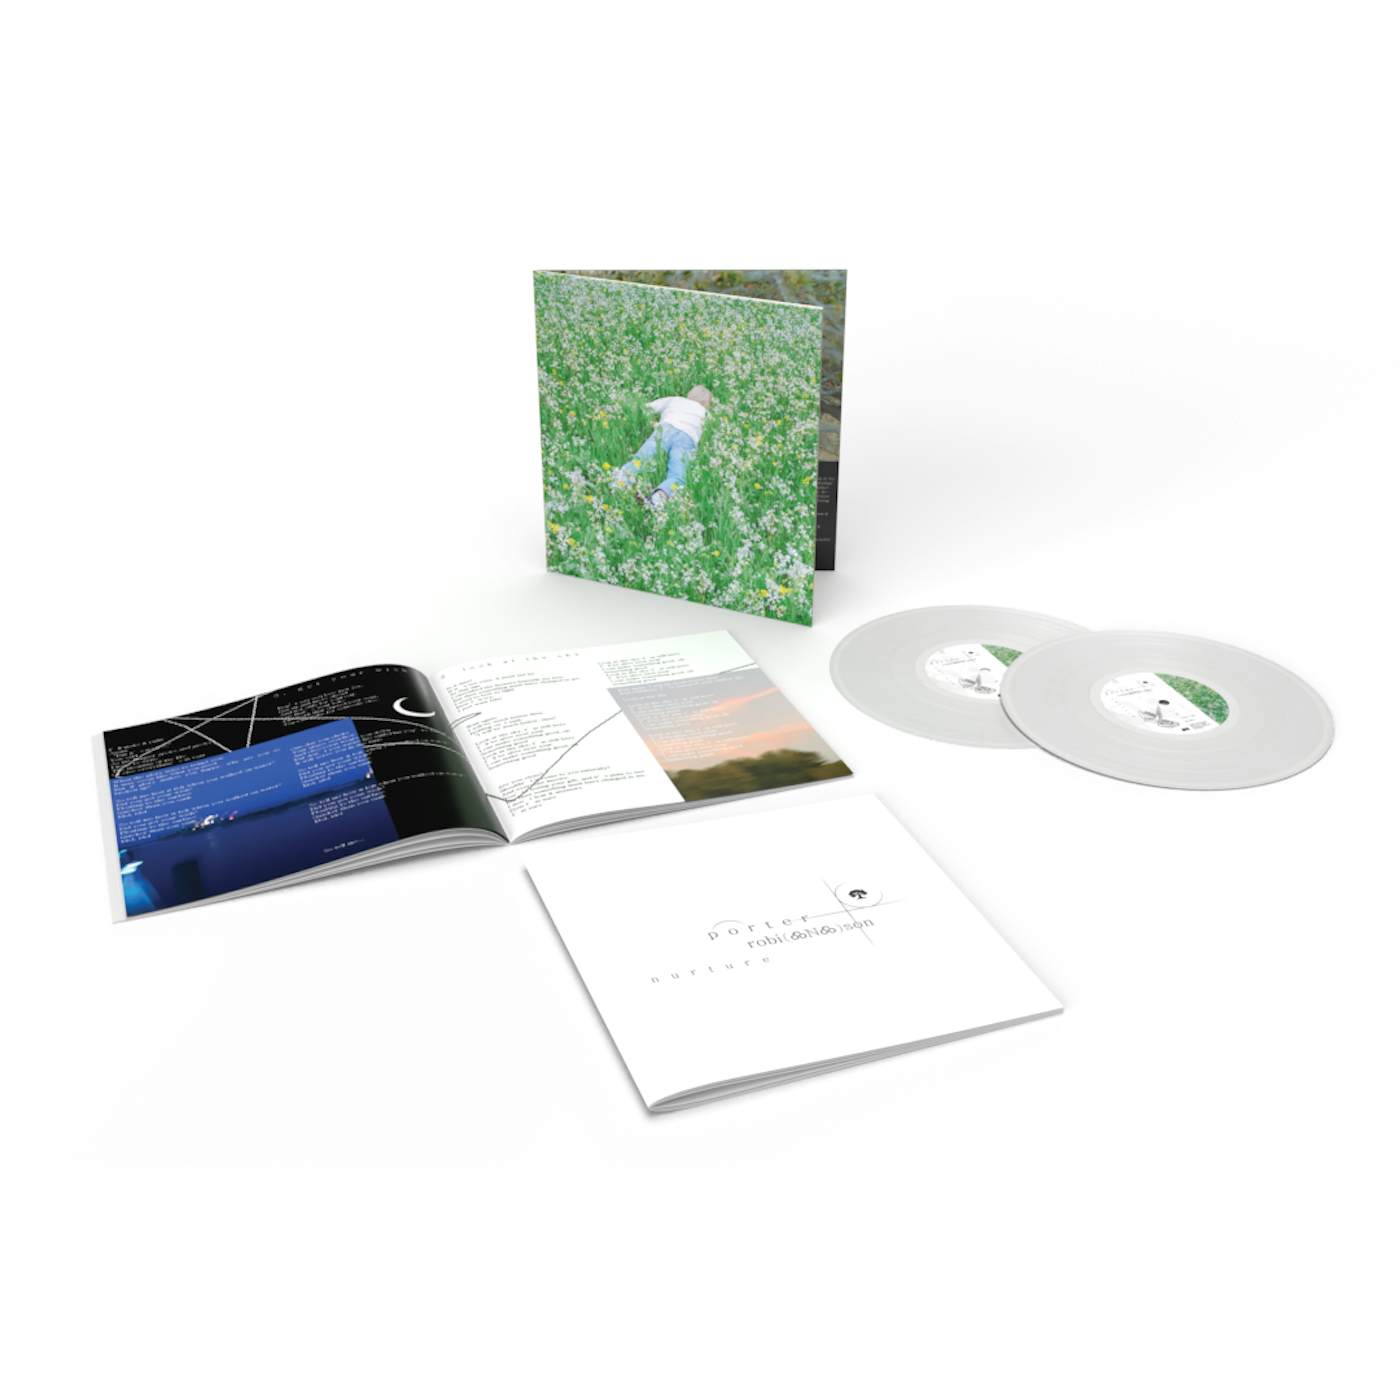 Porter Robinson nurture 2lp standard vinyl + digital album